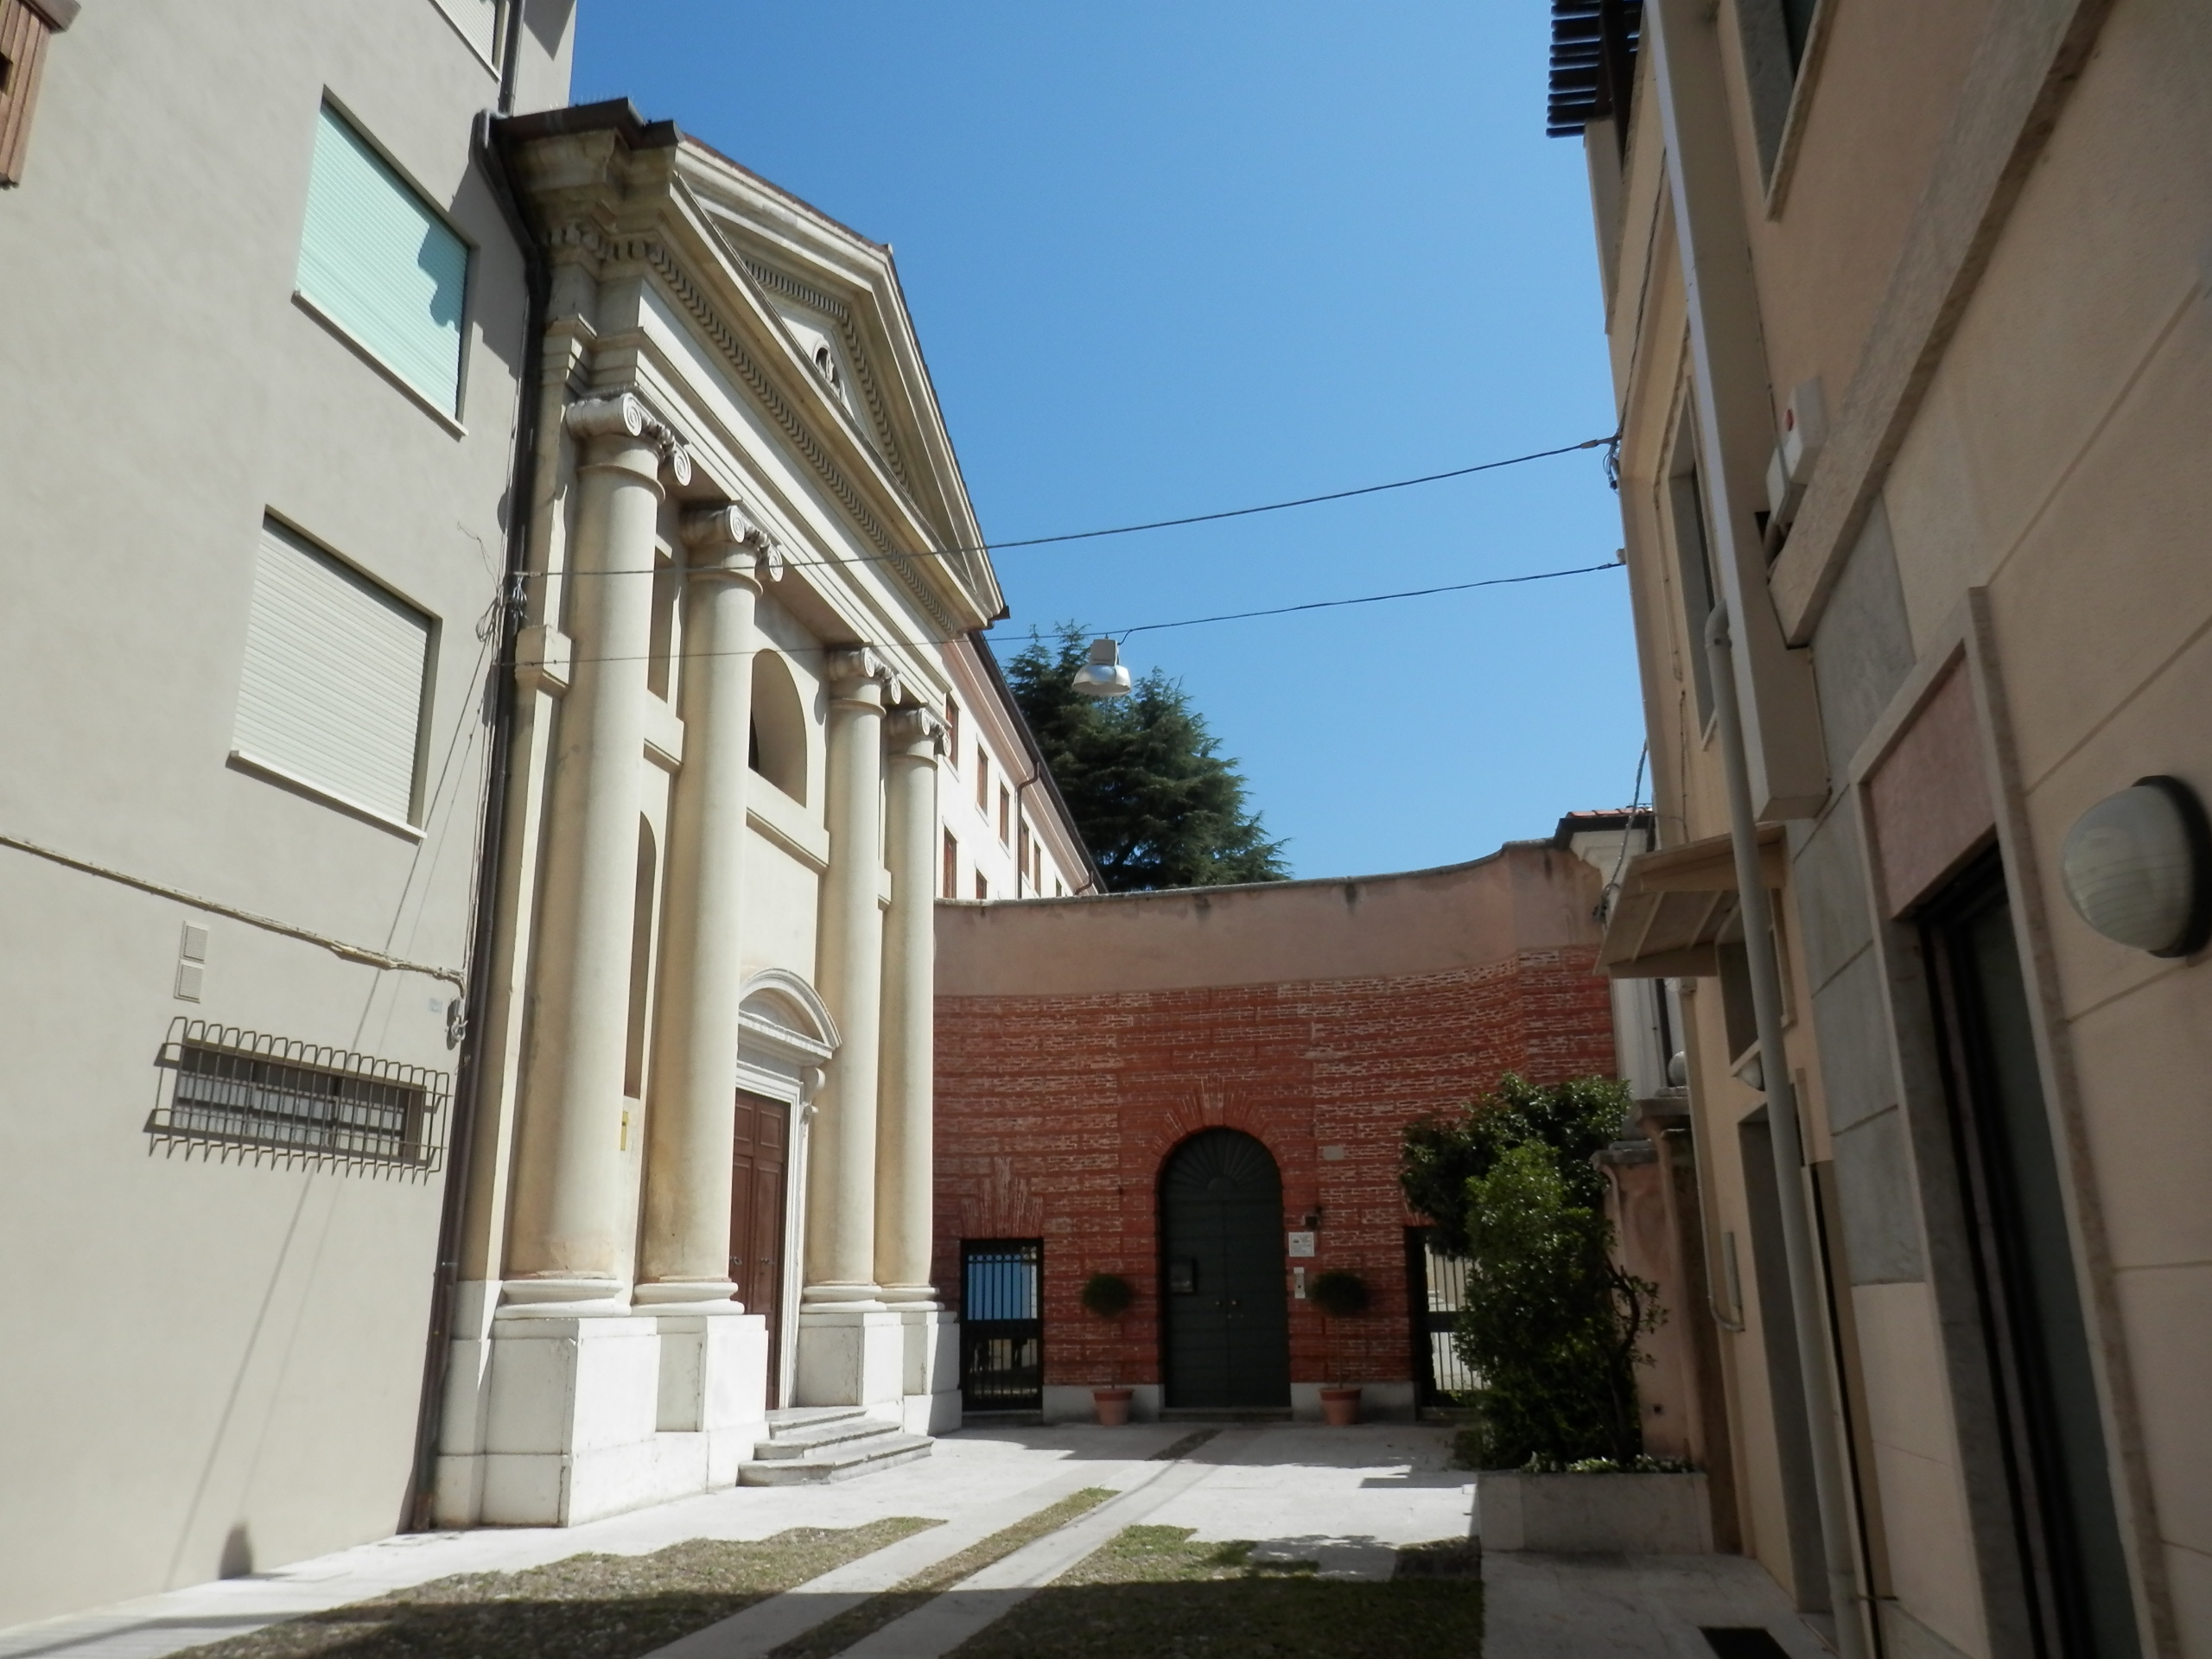 Casa dell'Orfanotrofio Pirani (casa) - Bassano del Grappa (VI) 